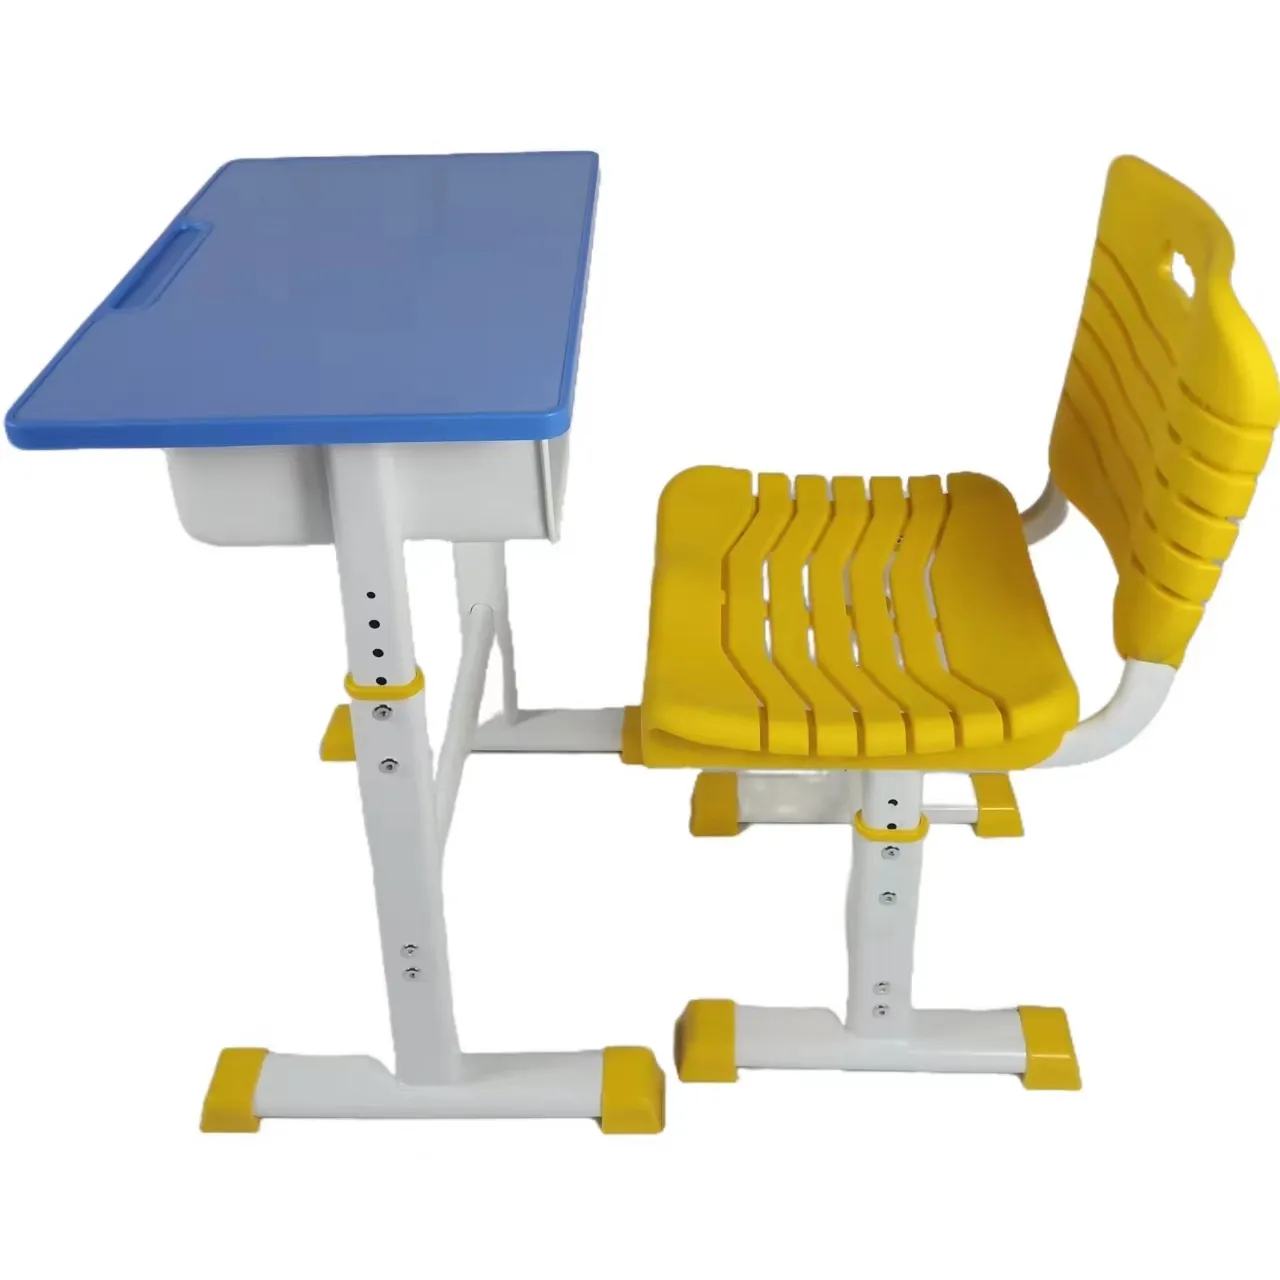 โต๊ะเรียน ABS โต๊ะสอนหลักสูตรนักเรียนชั้นประถมศึกษาและมัธยมศึกษา โต๊ะและเก้าอี้สามารถยกชุดศึกษาได้